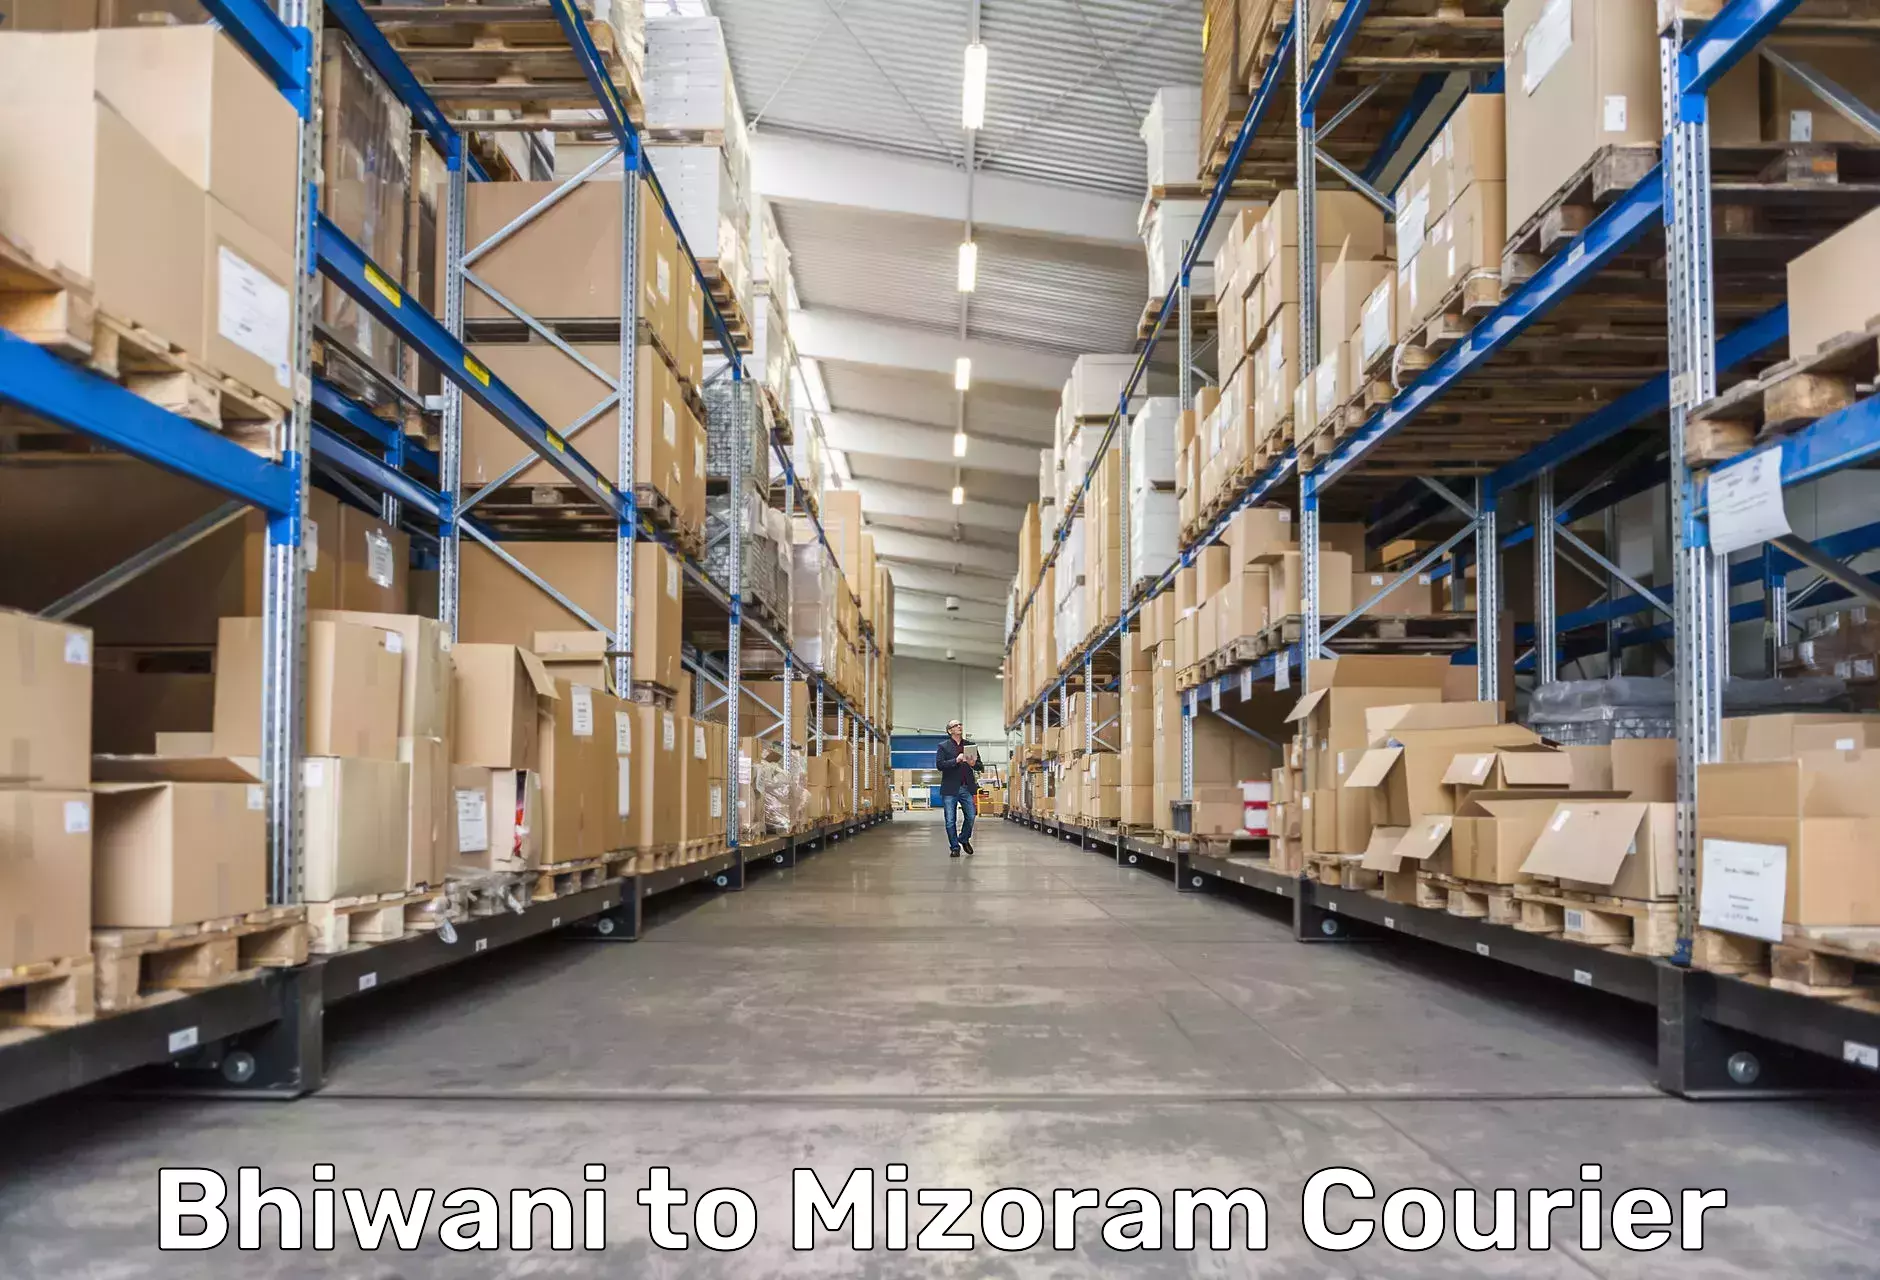 Doorstep delivery service Bhiwani to Mizoram